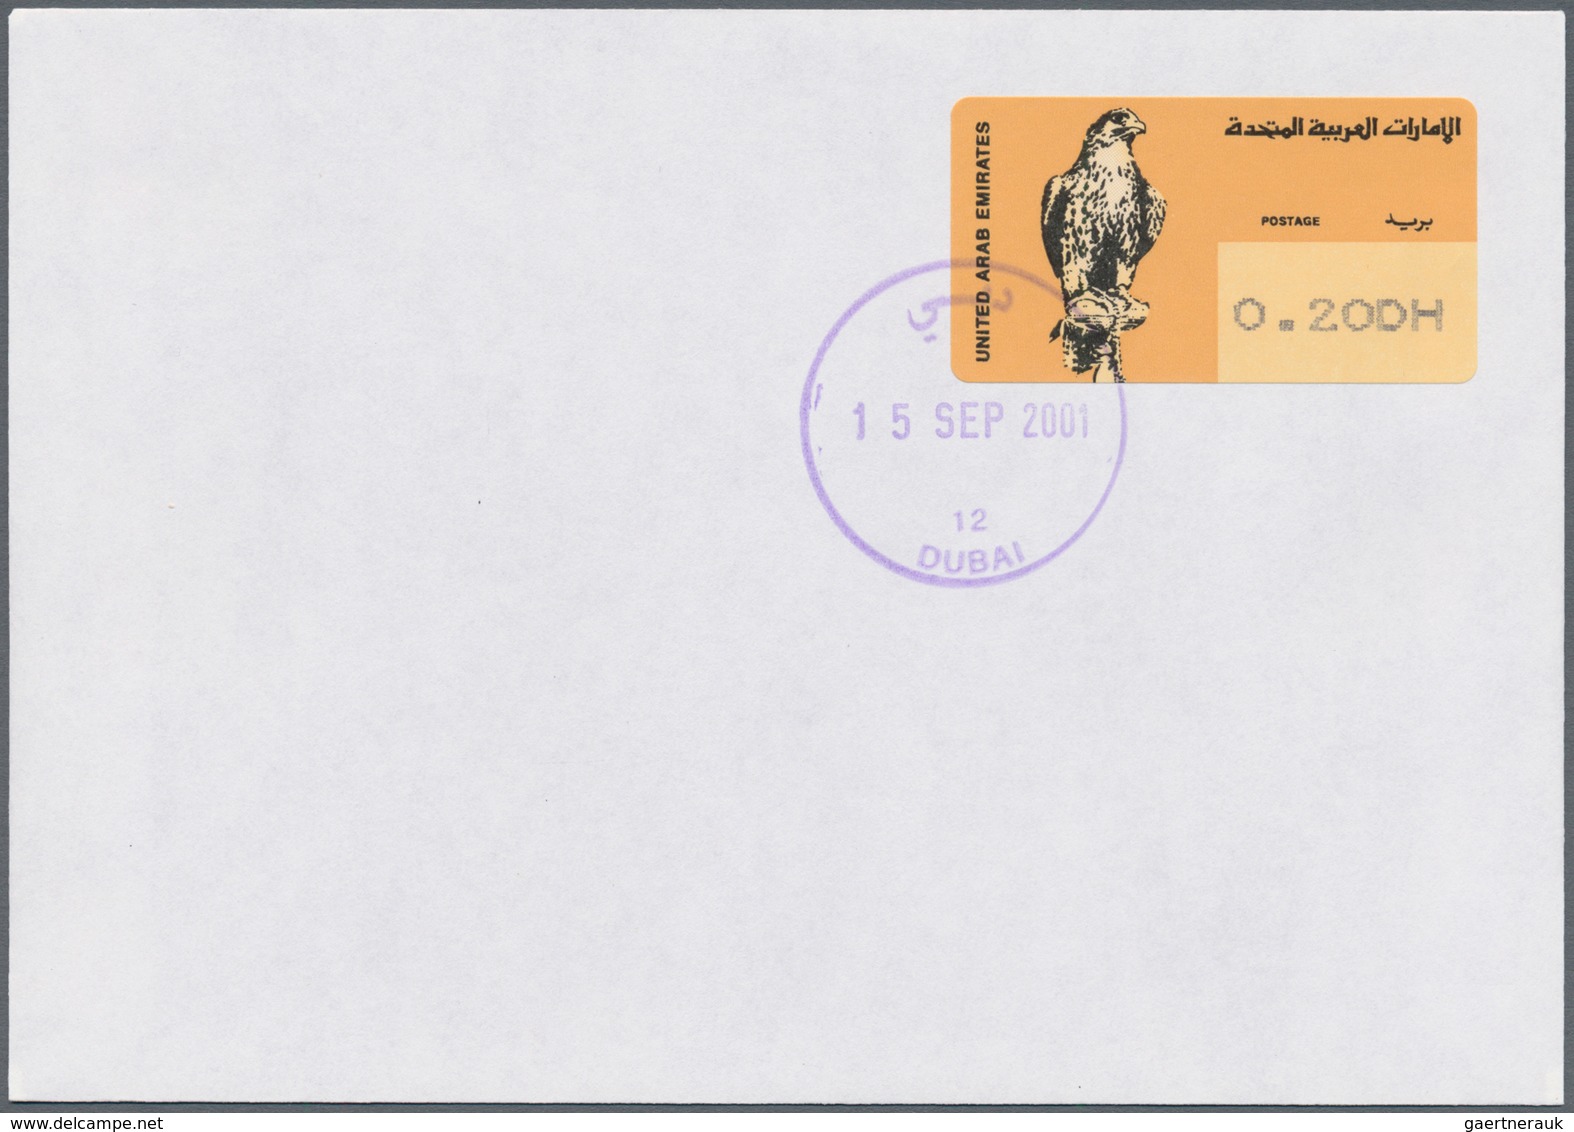 00467 Vereinigte Arabische Emirate - Automatenmarken: 2001. One of the rarest ATM stamp in the world is th